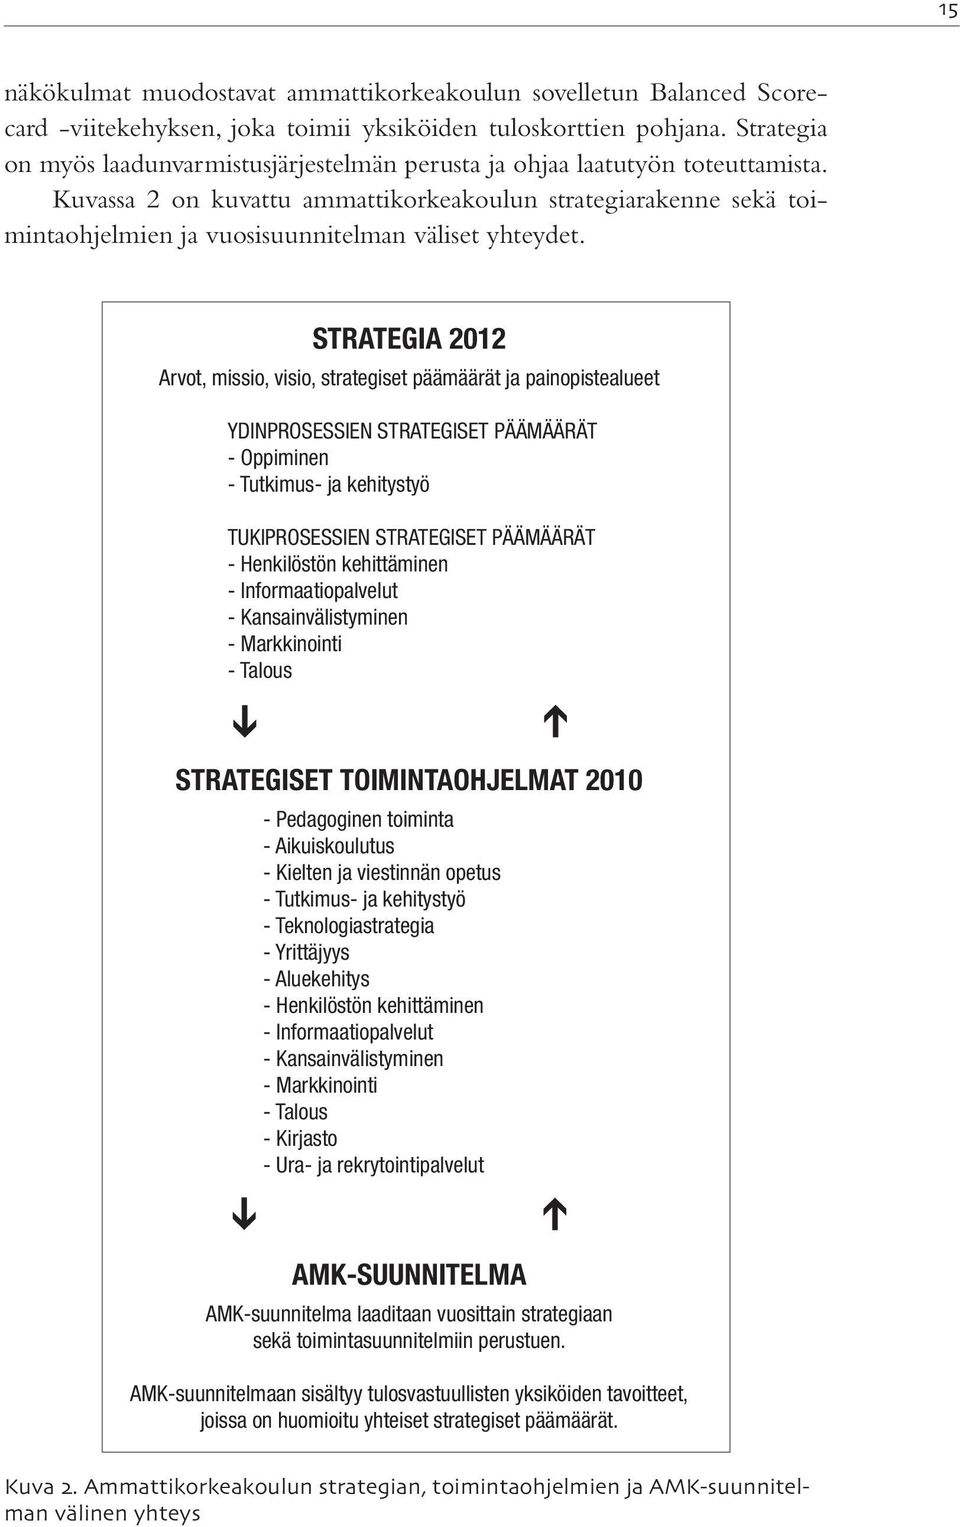 Kuvassa 2 on kuvattu ammattikorkeakoulun strategiarakenne sekä toimintaohjelmien ja vuosisuunnitelman väliset yhteydet.